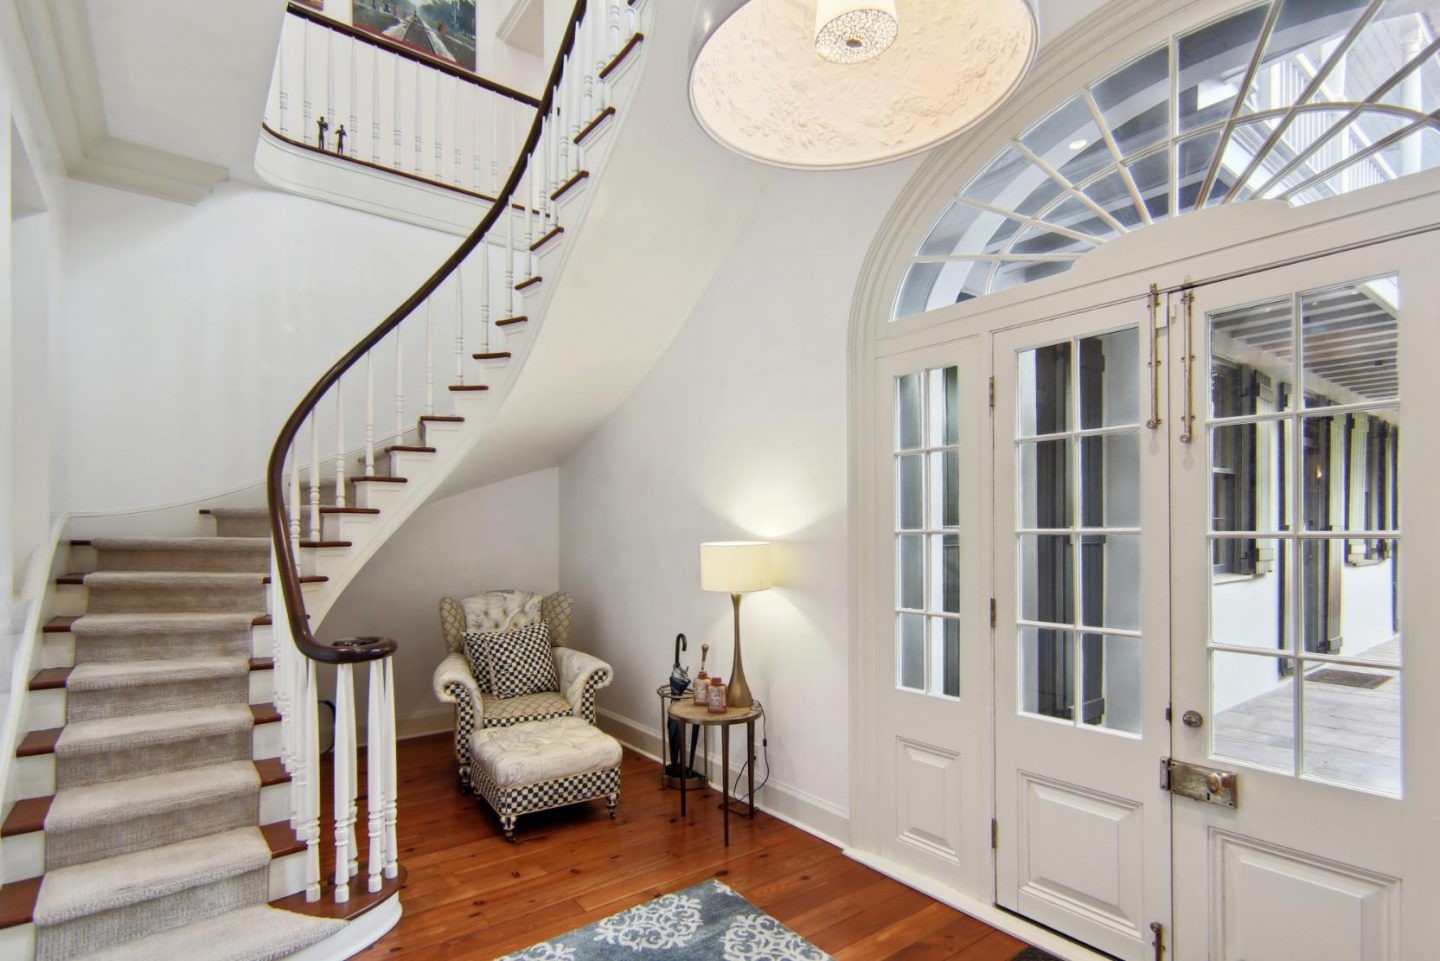 La maison d'hôtes de trois étages comprend un magnifique escalier.